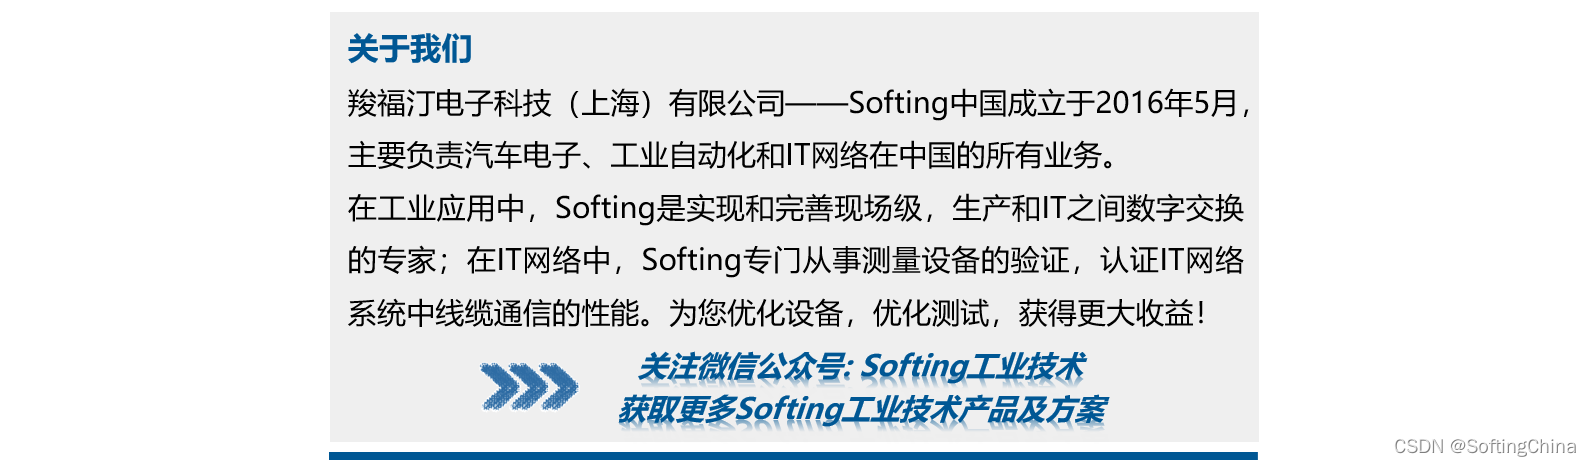 高光时刻 | Softing中国再度成为“十佳企业”